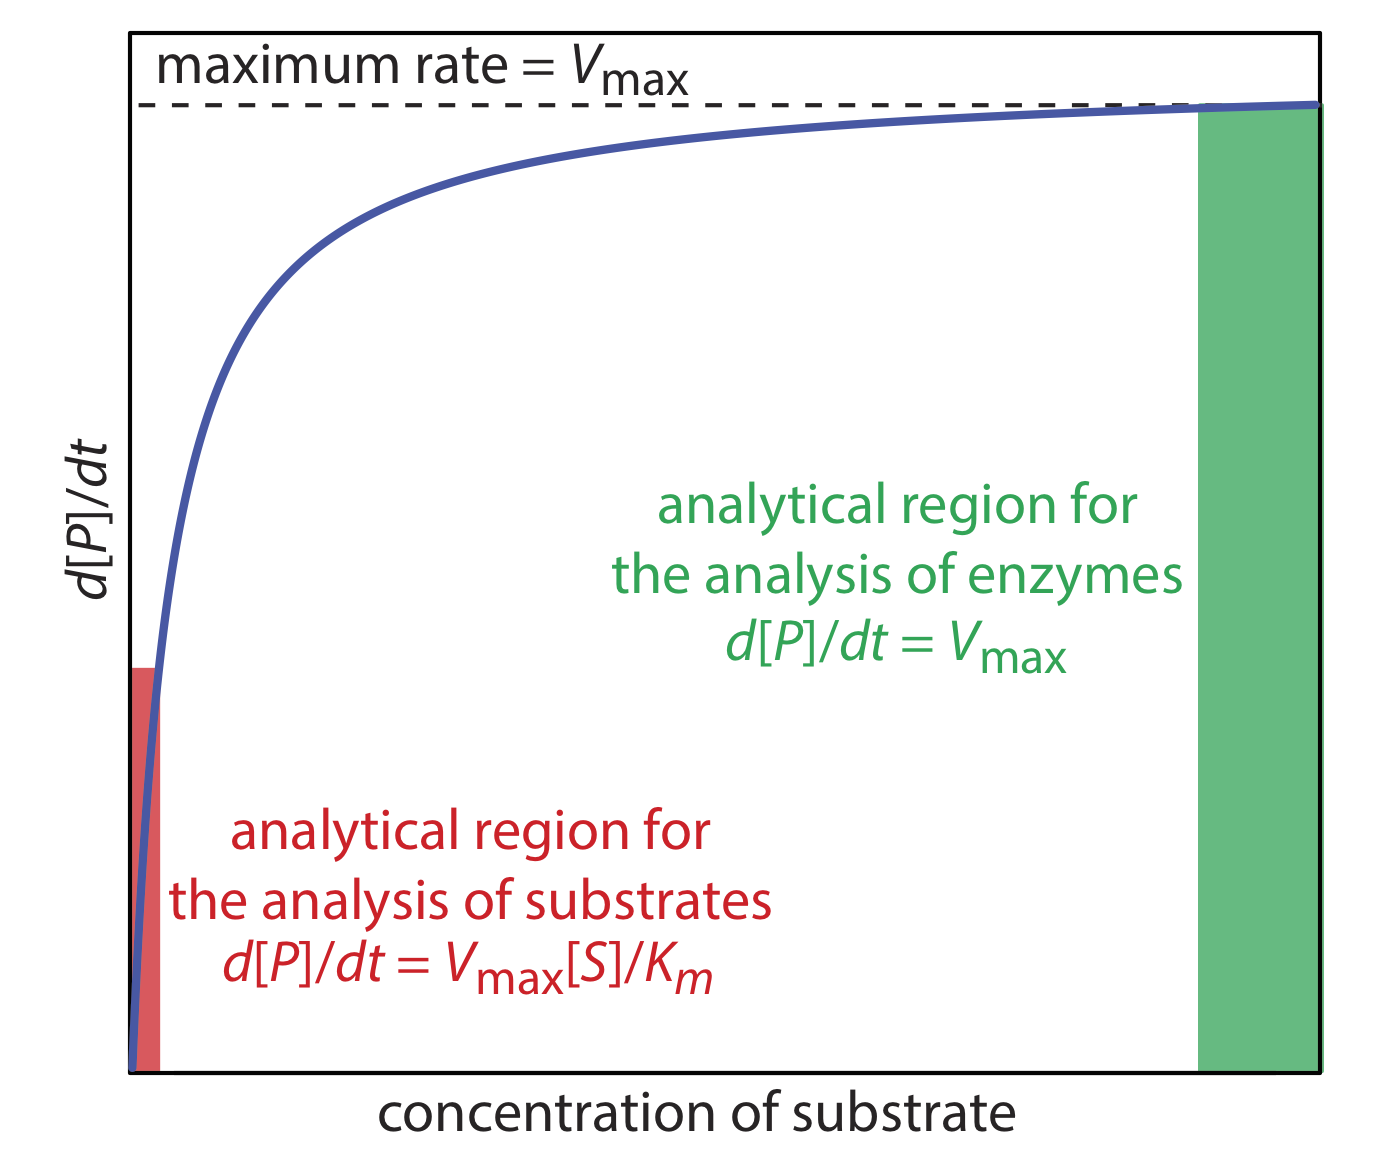 La gráfica de concentración de sustrato versus d [p] /dt aumenta rápidamente al principio antes de desacelerar y acercarse a V (max). La pendiente inicial de la gráfica es la región analítica para el análisis de sustratos mientras que la pendiente final de la gráfica es la región analítica de enzimas.